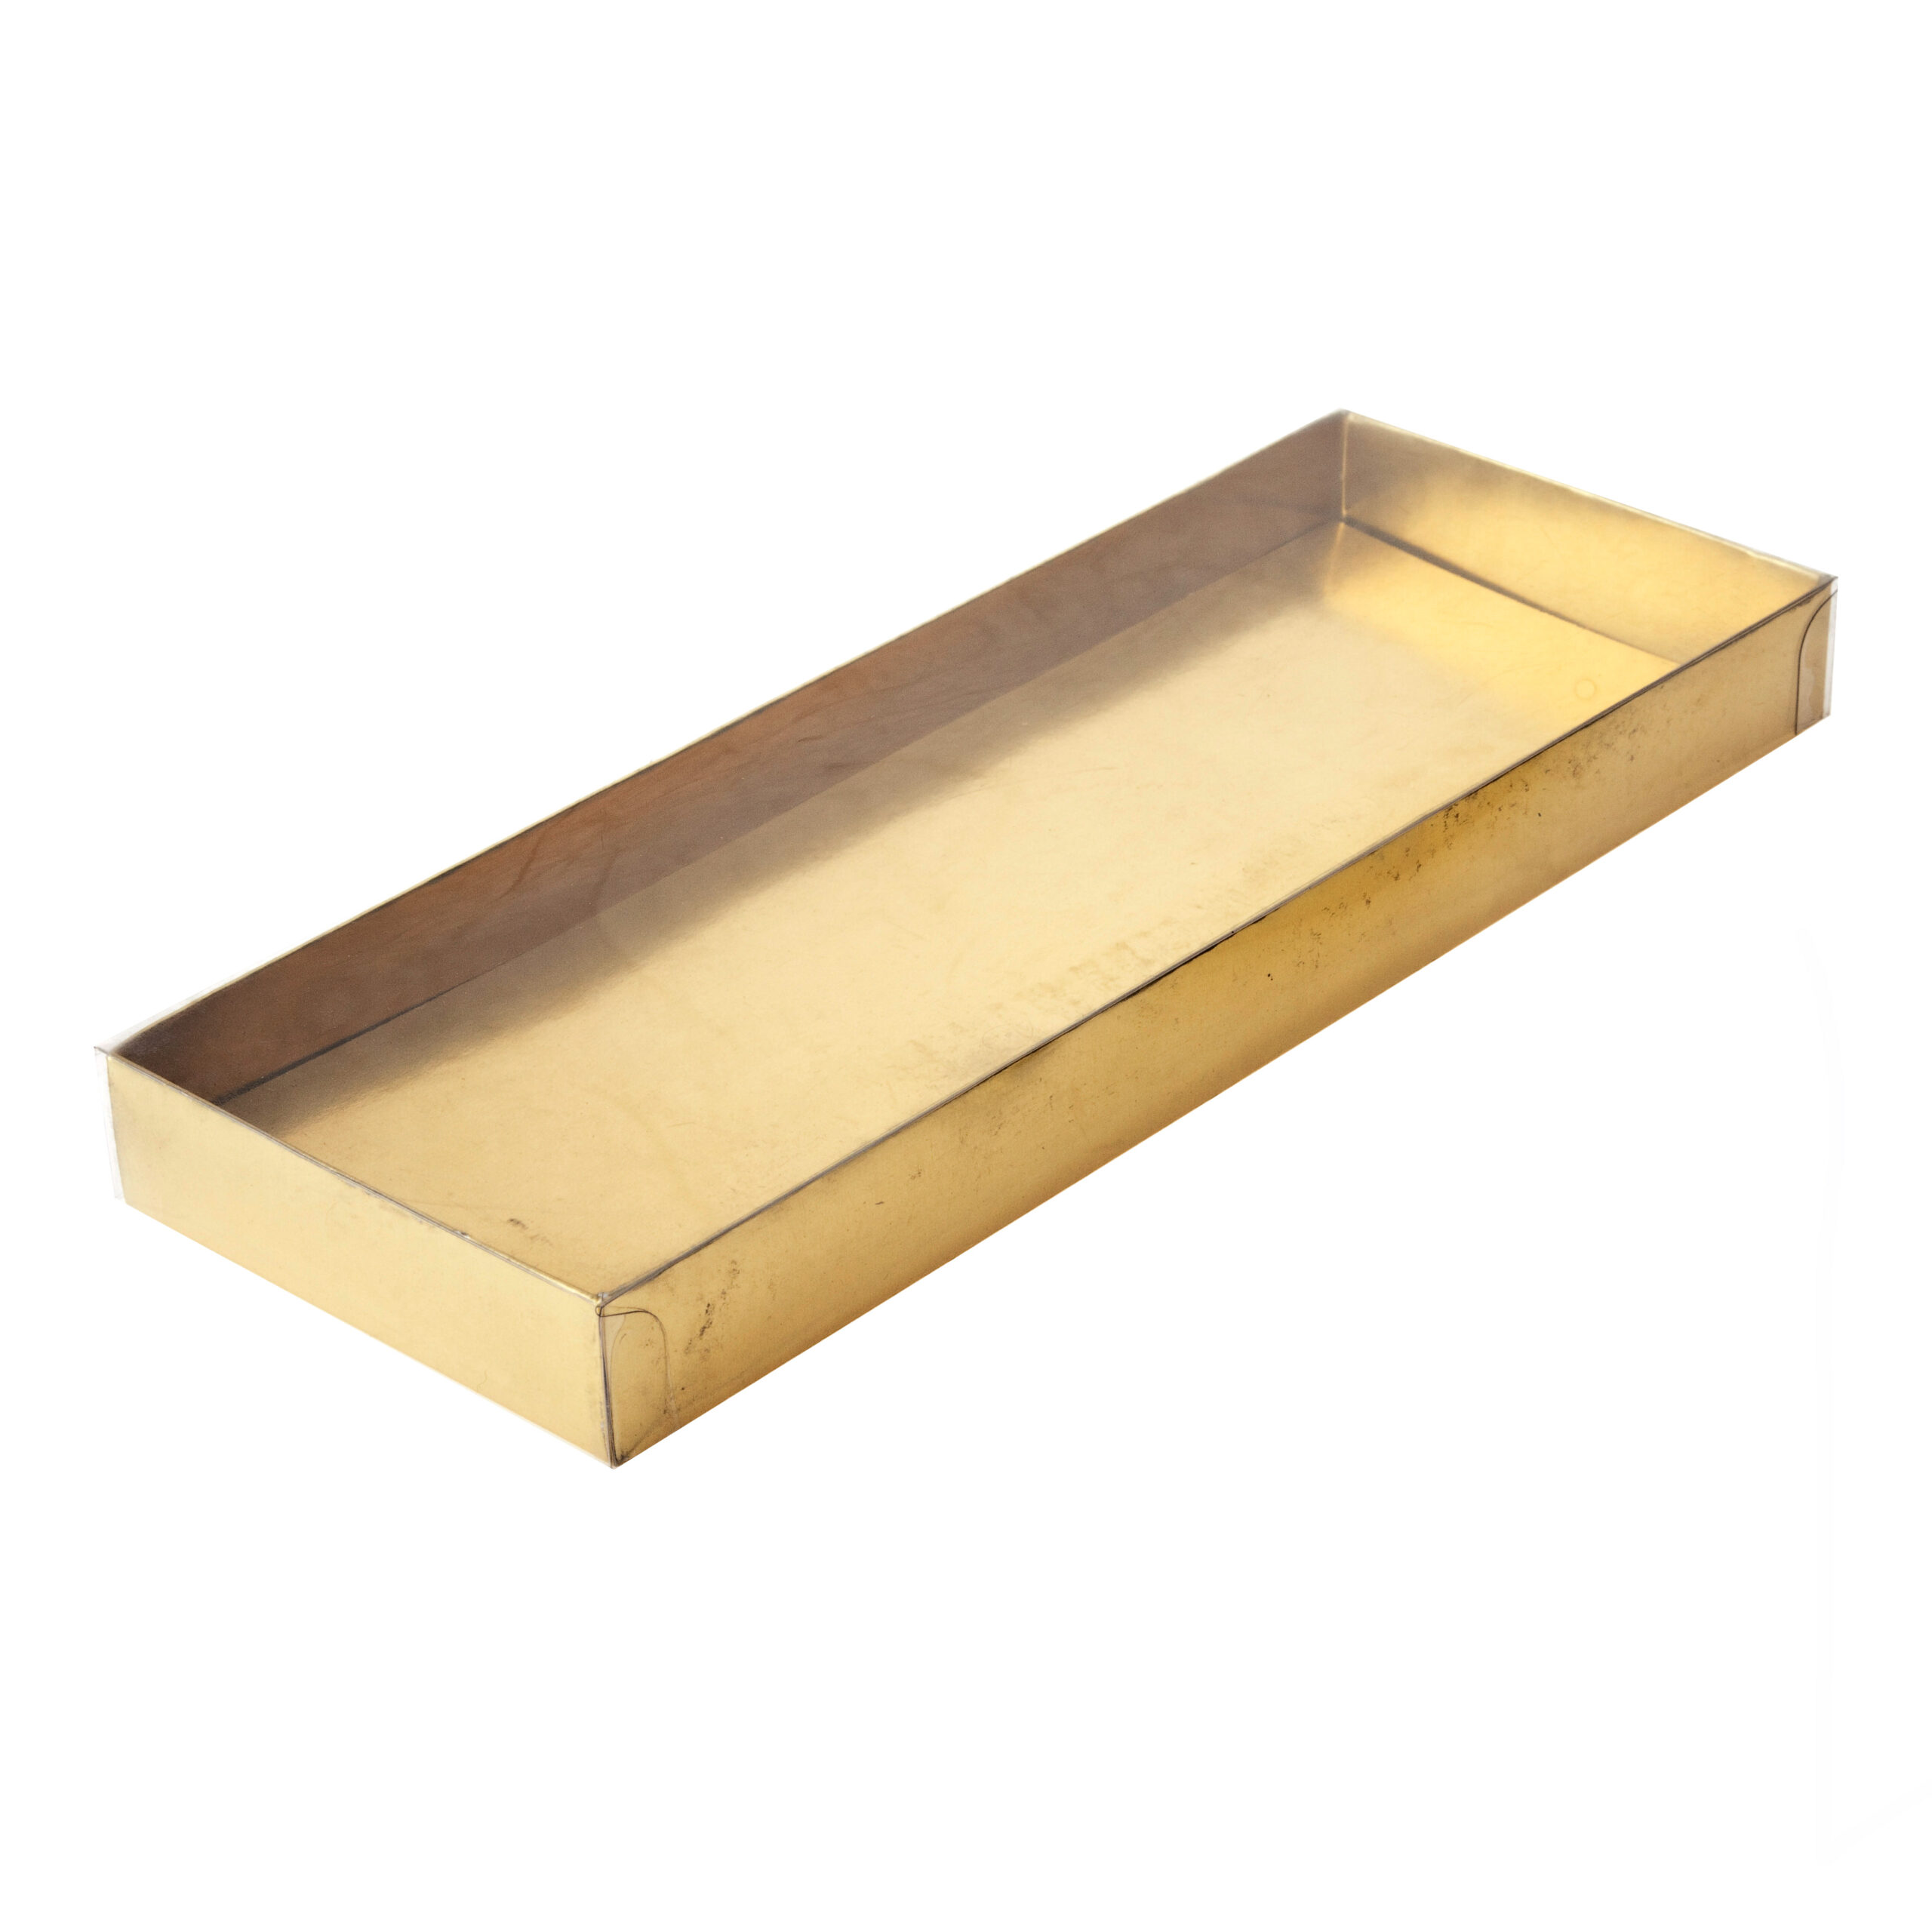 PVC BOX
GOLD/SILVER
BASE
303x111x21mm